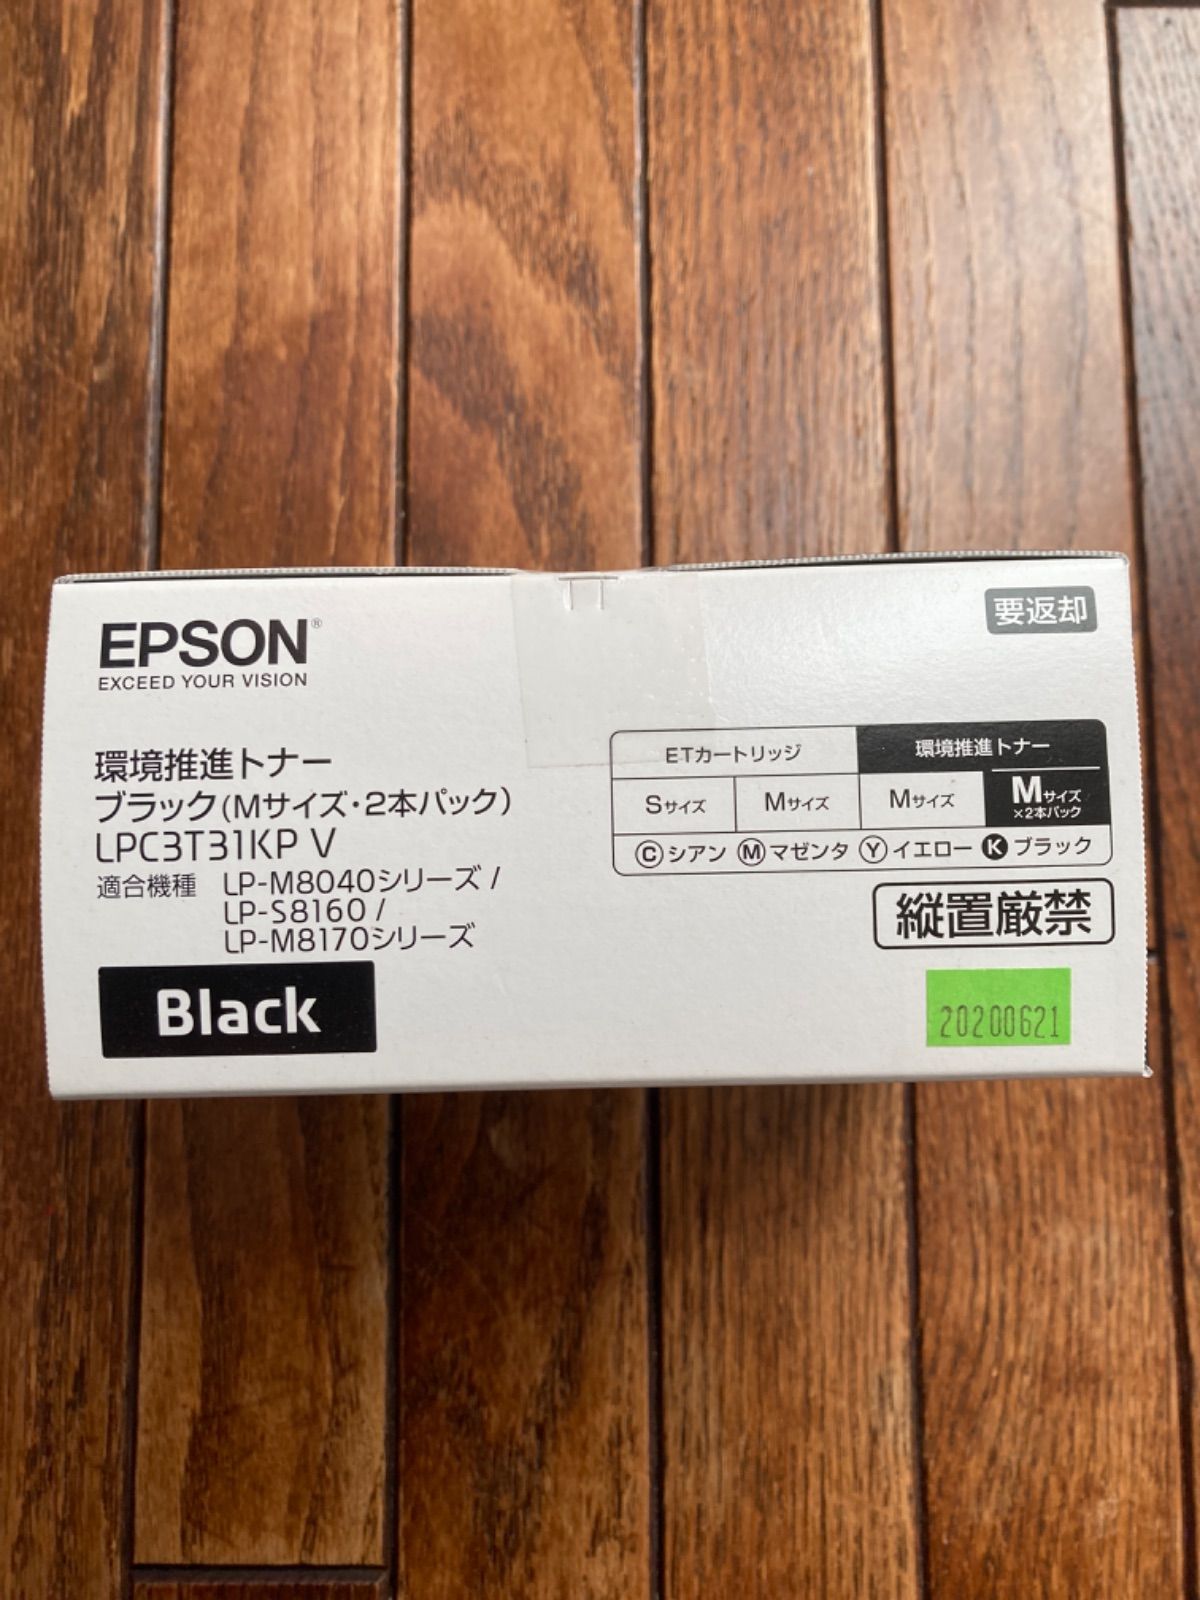 93%OFF!】 EPSON LPC3T31K LP-M8040シリーズ用 トナーカートリッジ ブラック Mサイズ 4900ページ 